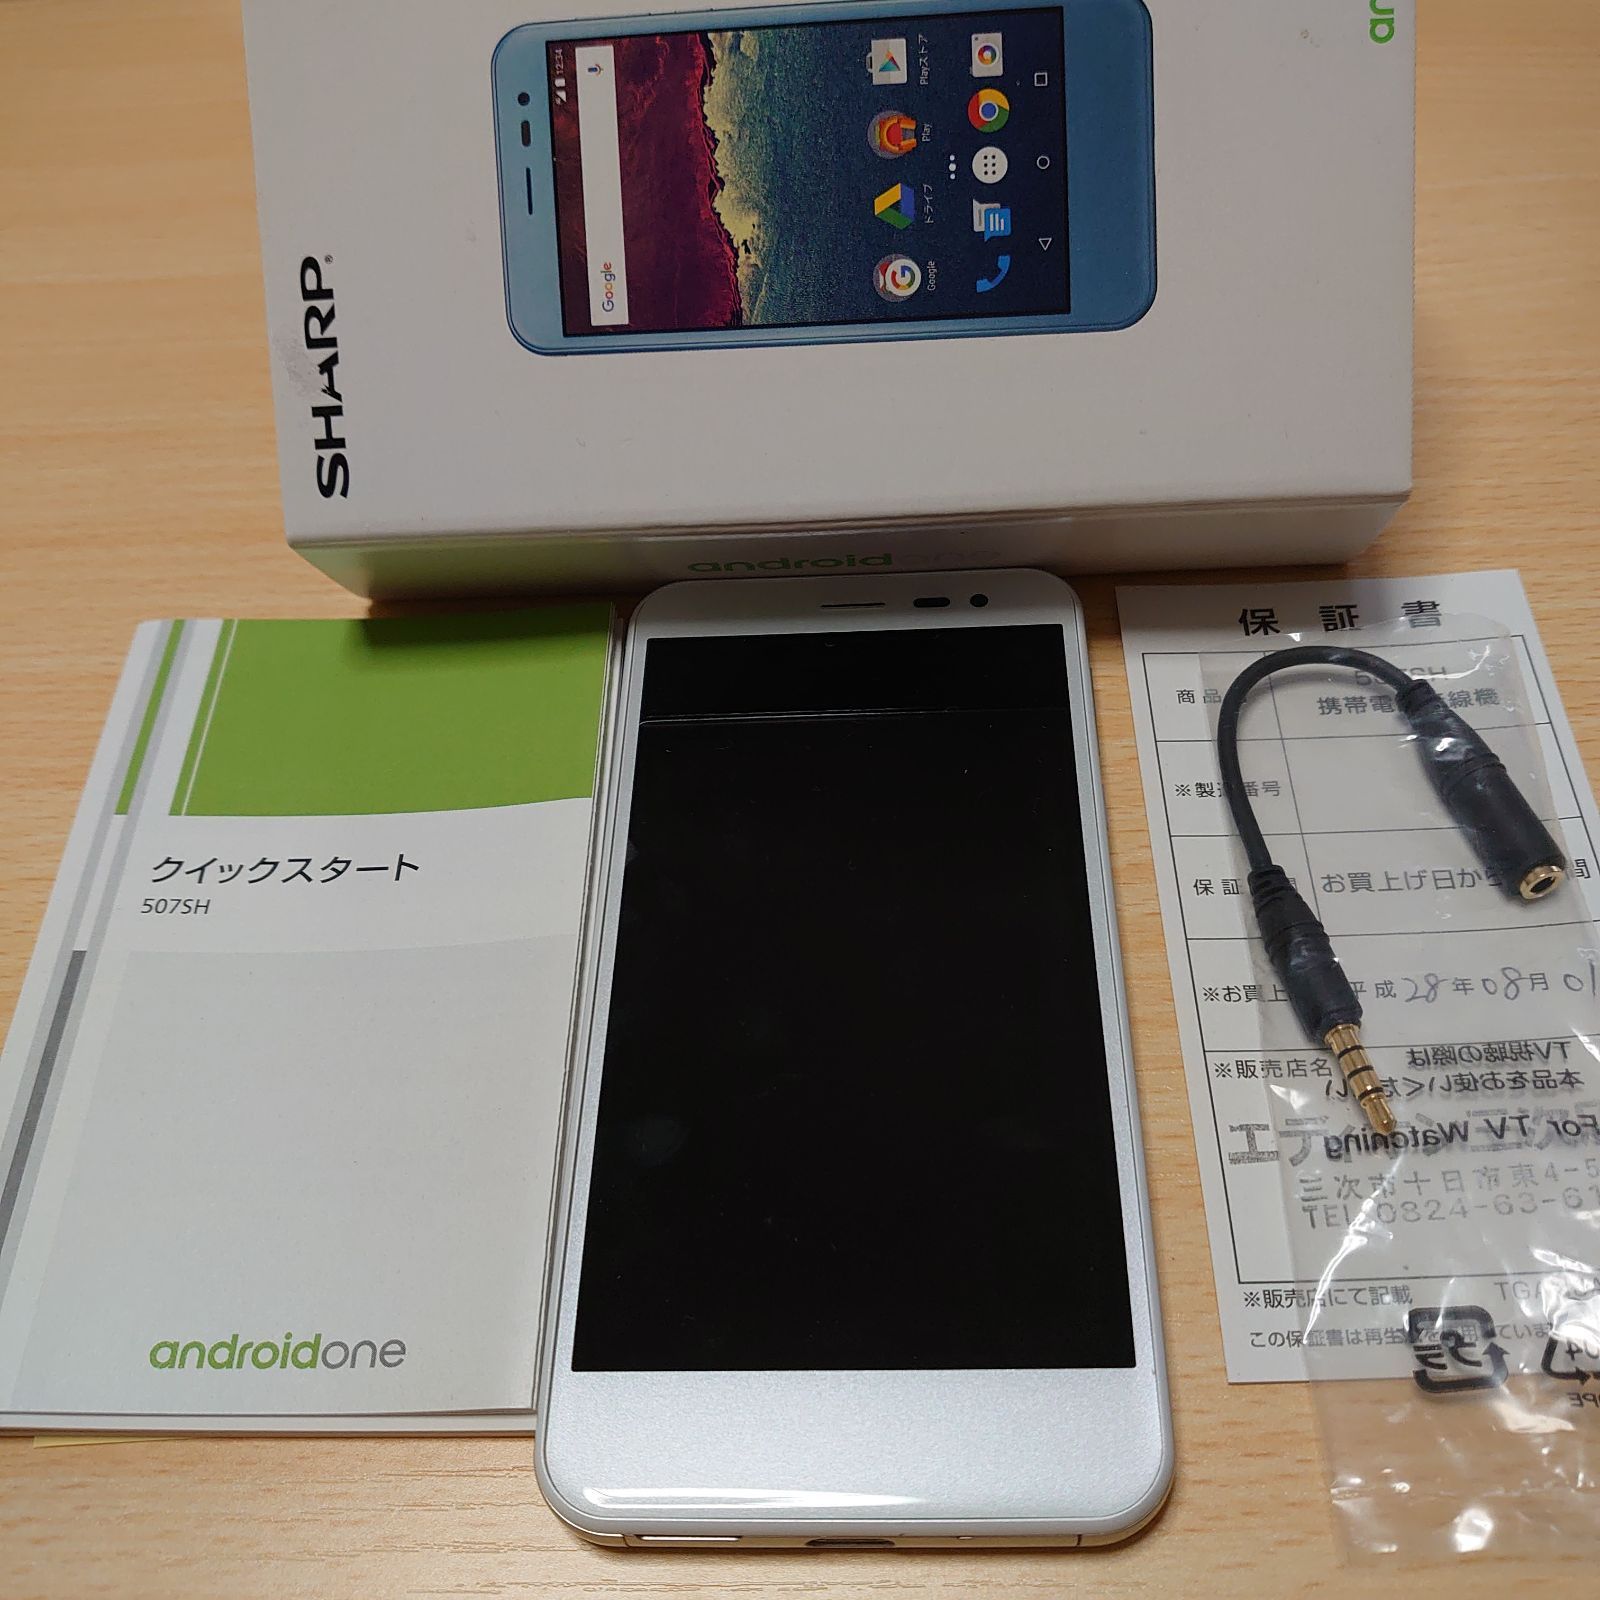 SHARP Android One 507SH 16GB ホワイト simフリー - イチゴshop ...